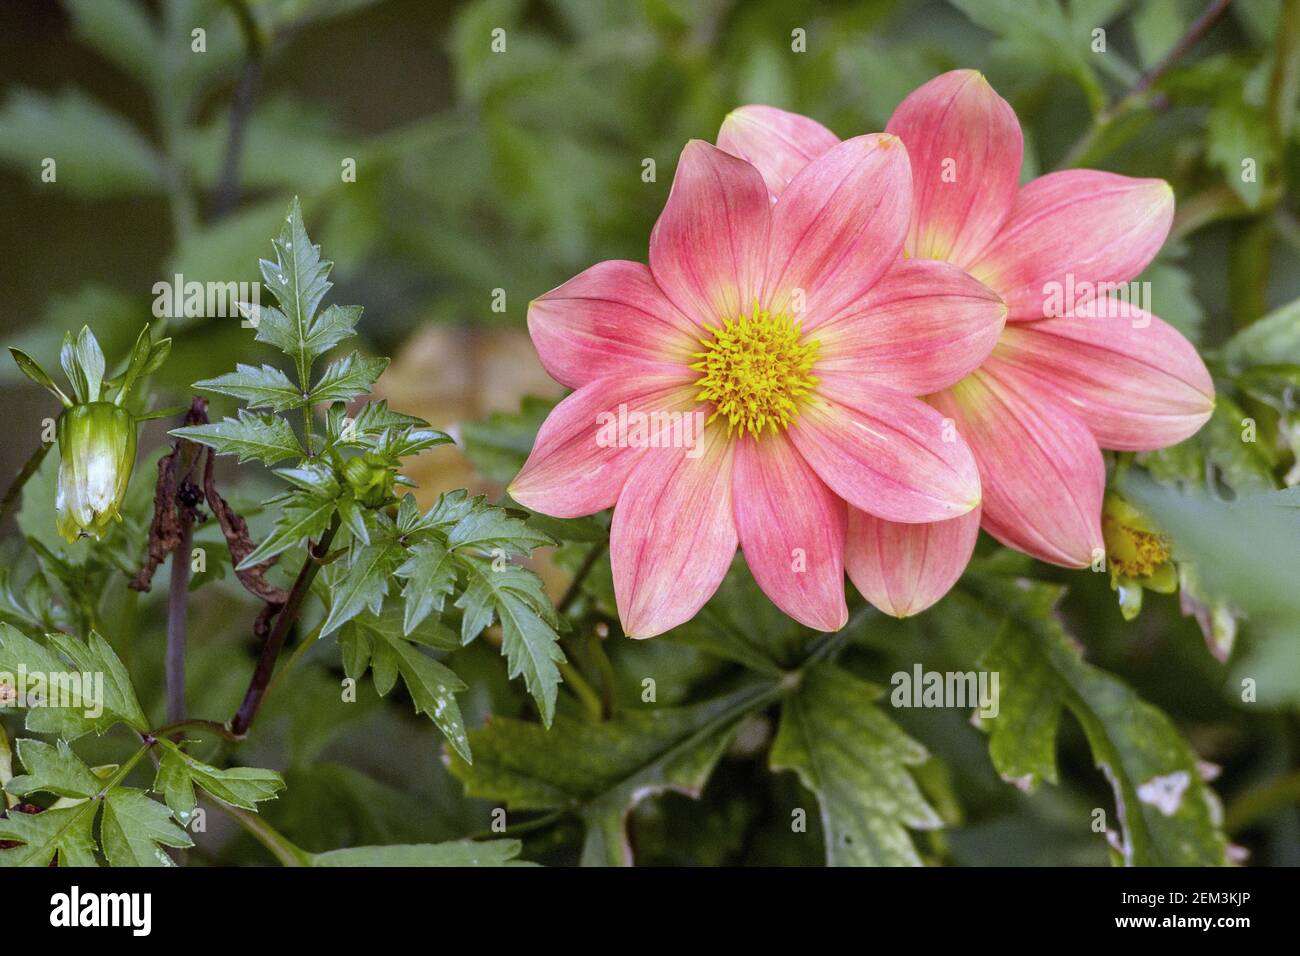 georgina (Dahlia-Hybride), pink blossoms Stock Photo